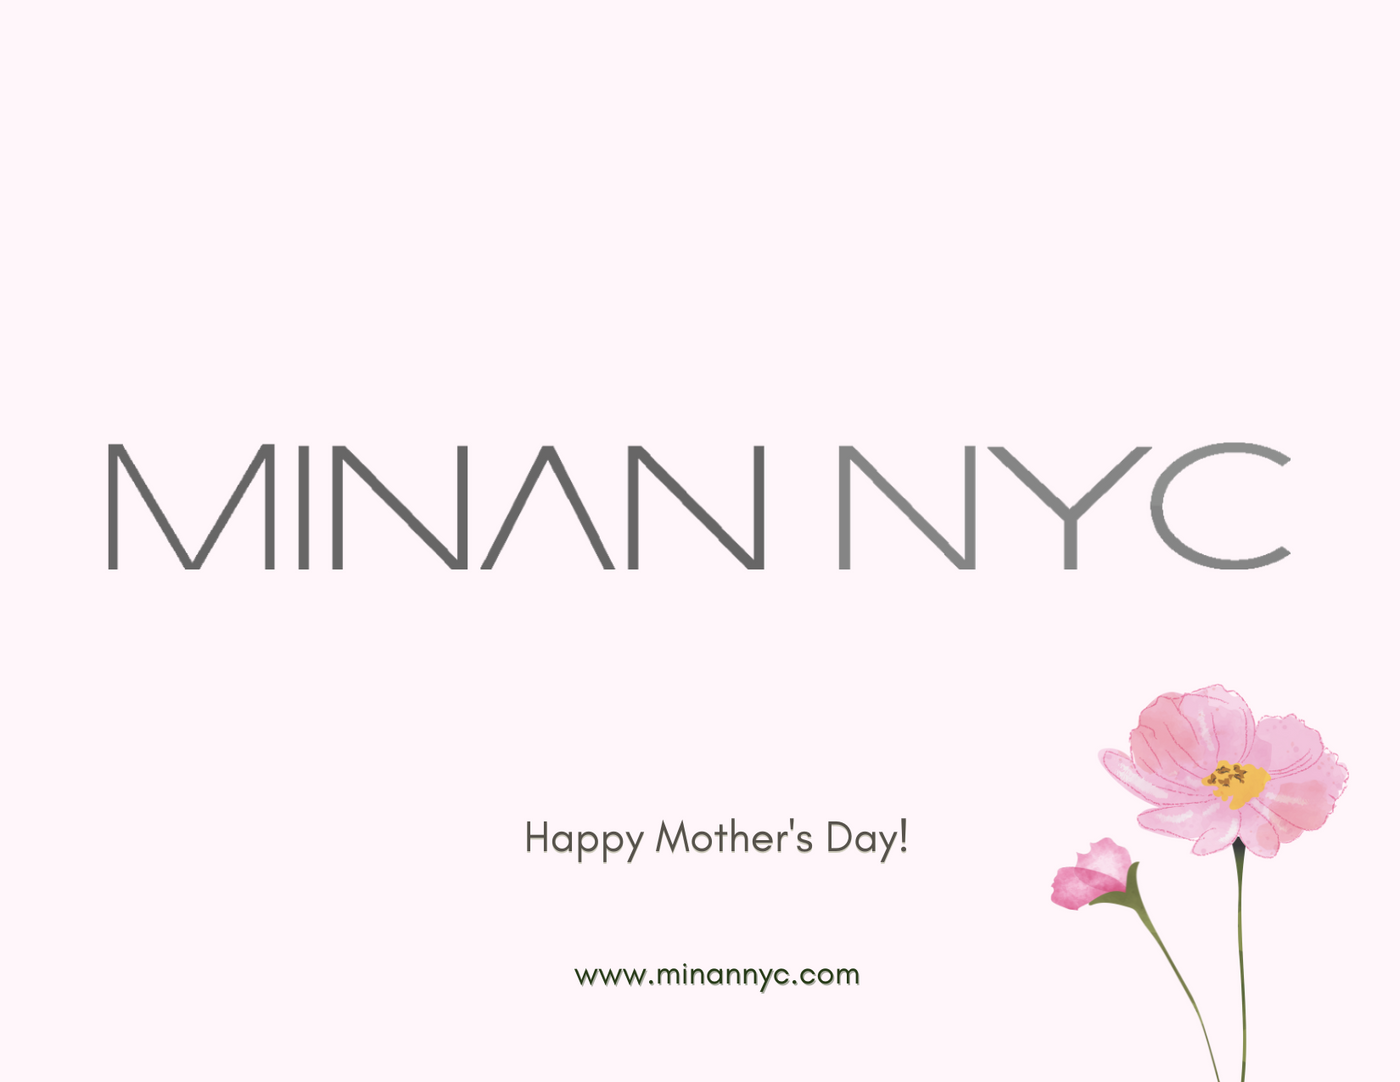 MINAN.NYC Gift Card